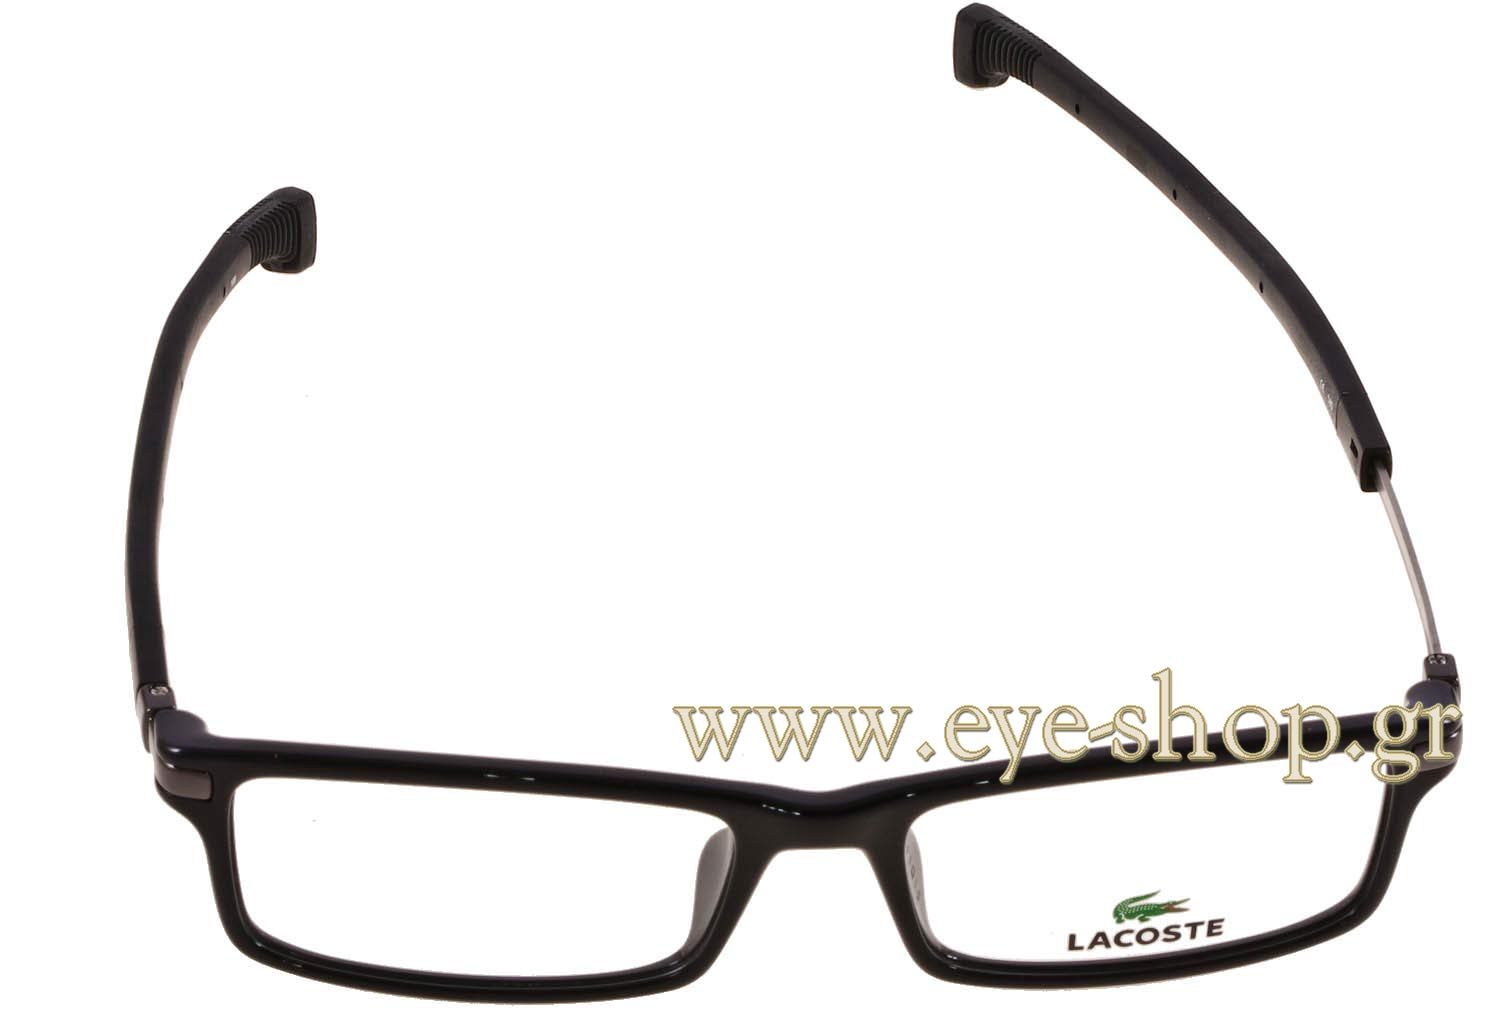 lacoste glasses magnetic frames Cheaper 